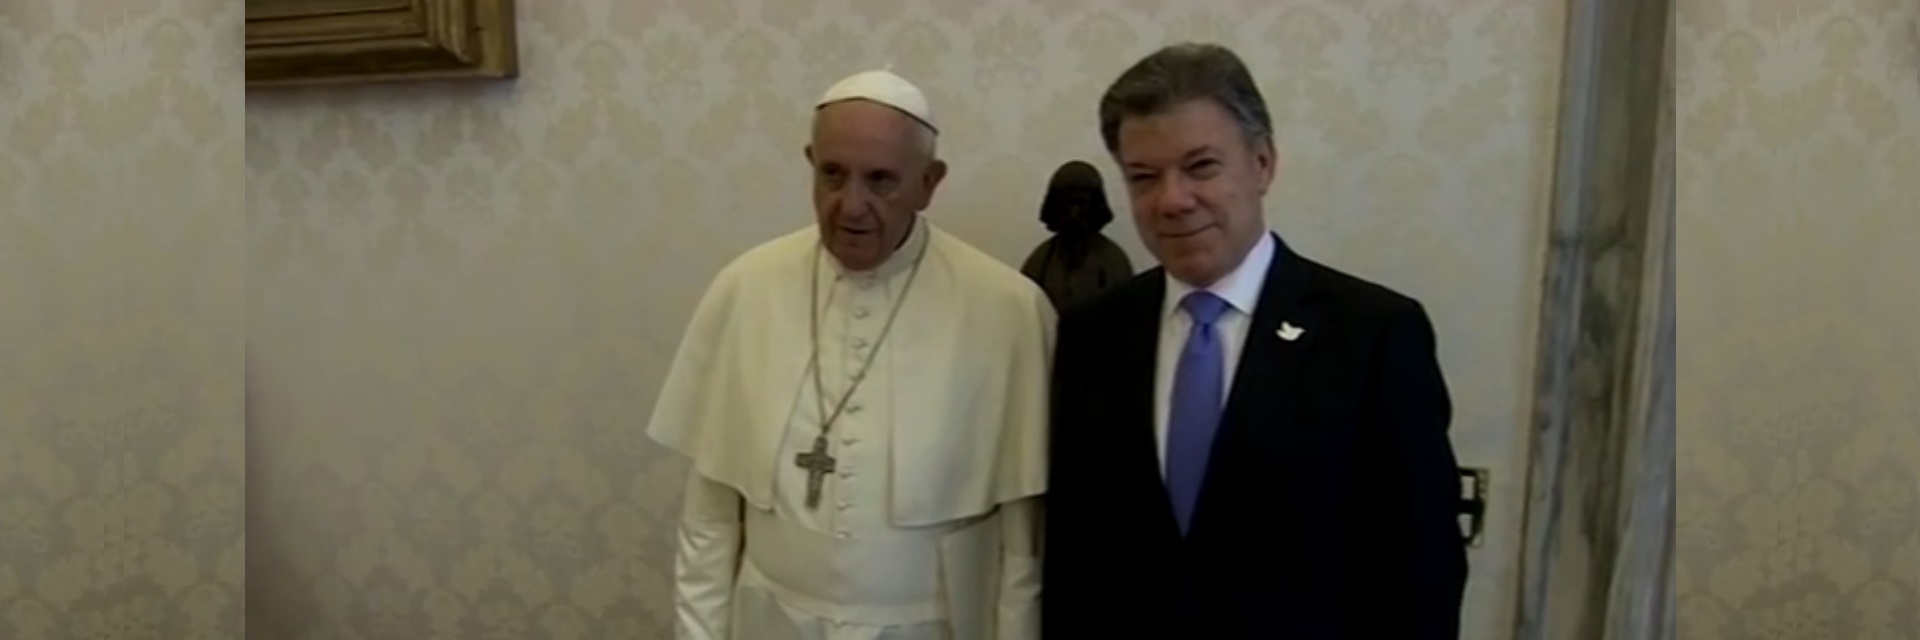 El papa Francisco recibió al presidente de Colombia y en su encuentro destacaron la necesidad de reconciliación y paz en el país